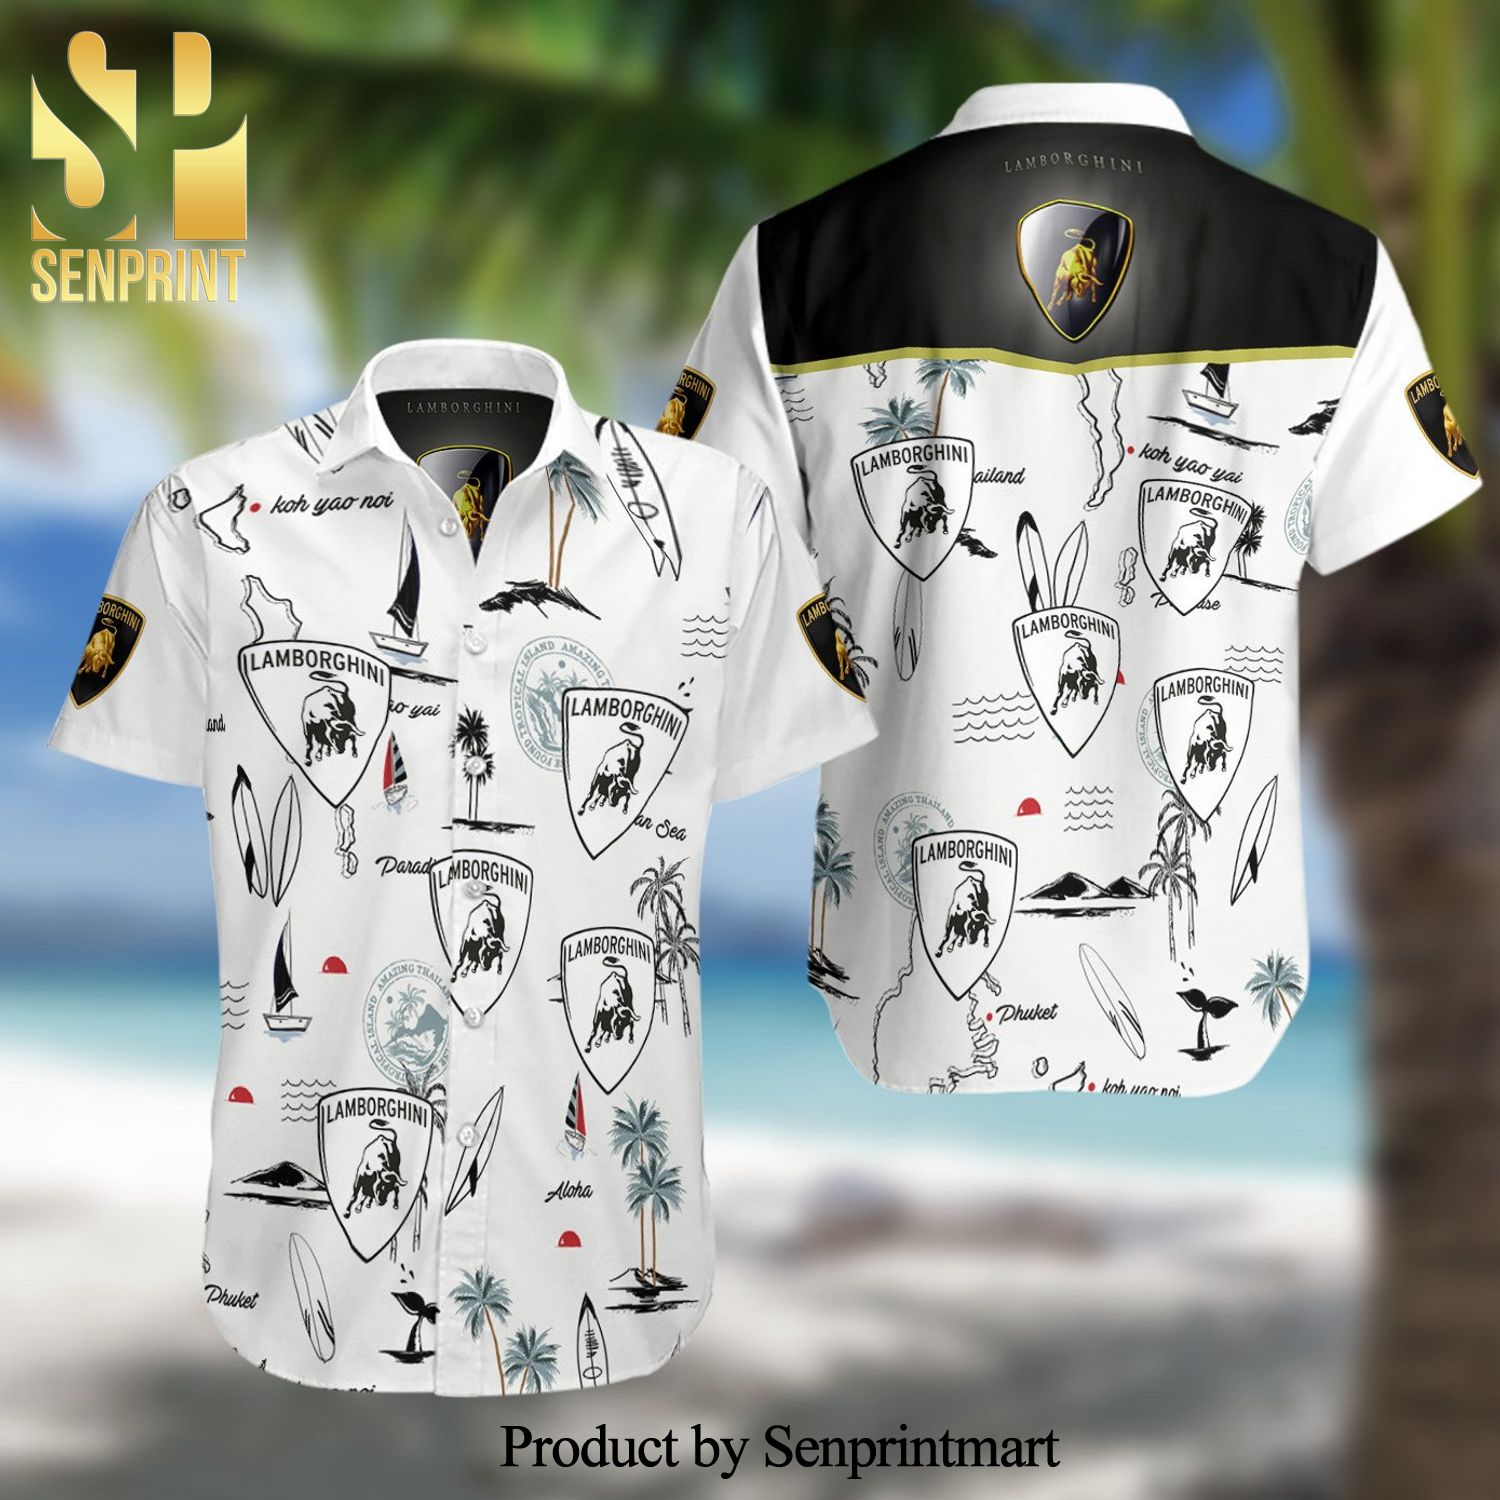 Squadra Corse Lamborghini F1 Racing Full Printing Summer Short Sleeve Hawaiian Beach Shirt – White